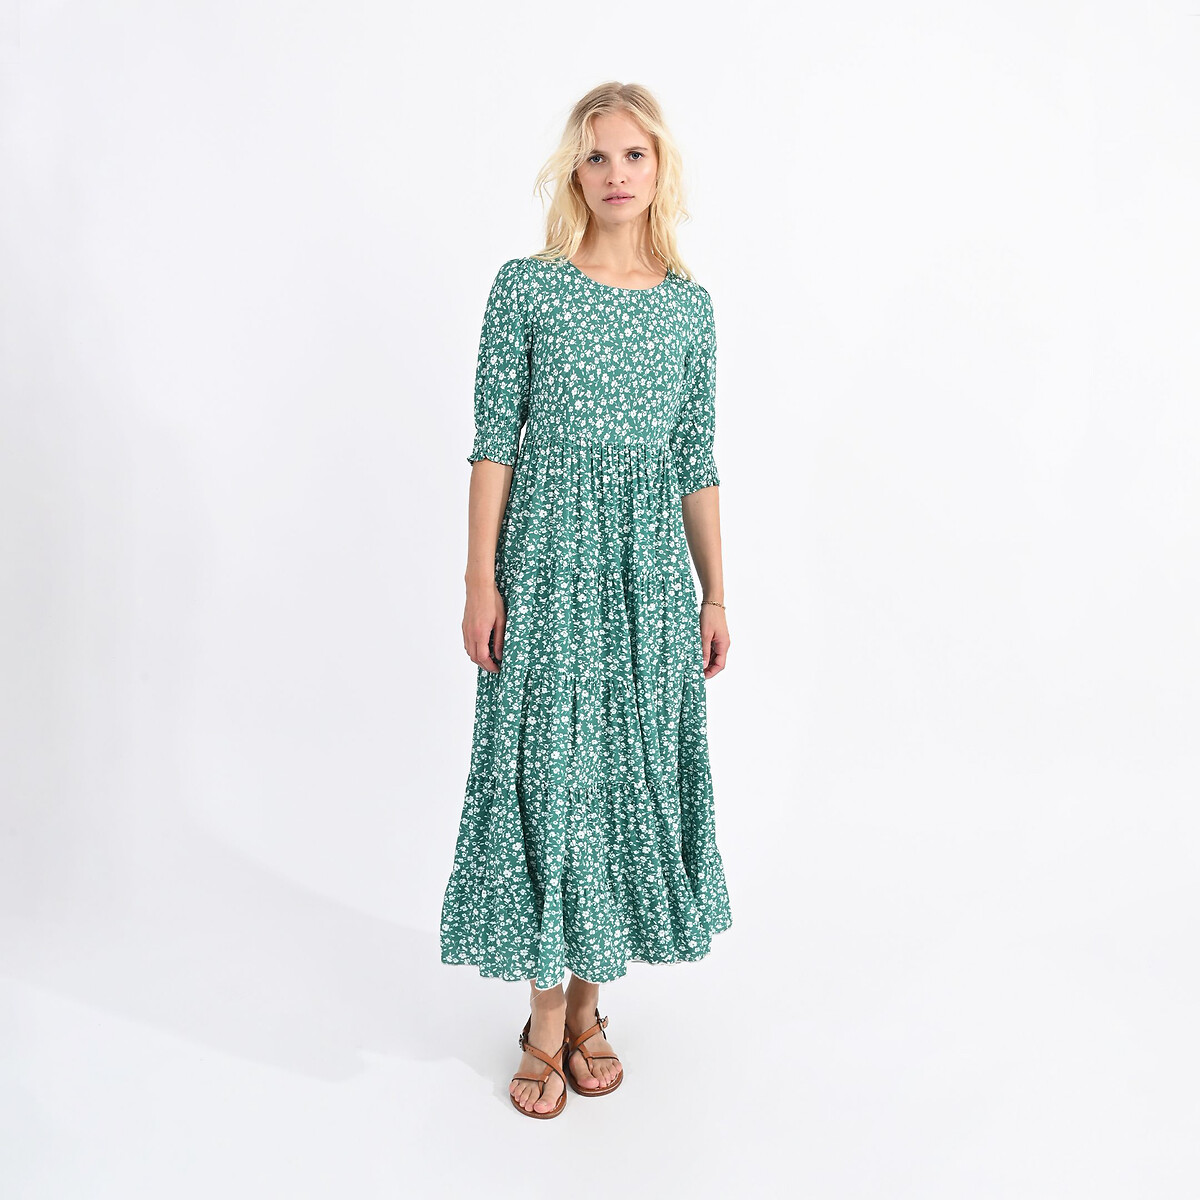 Платье длинное с цветочным принтом XL зеленый платье длинное с тропическим принтом caledonia xl синий